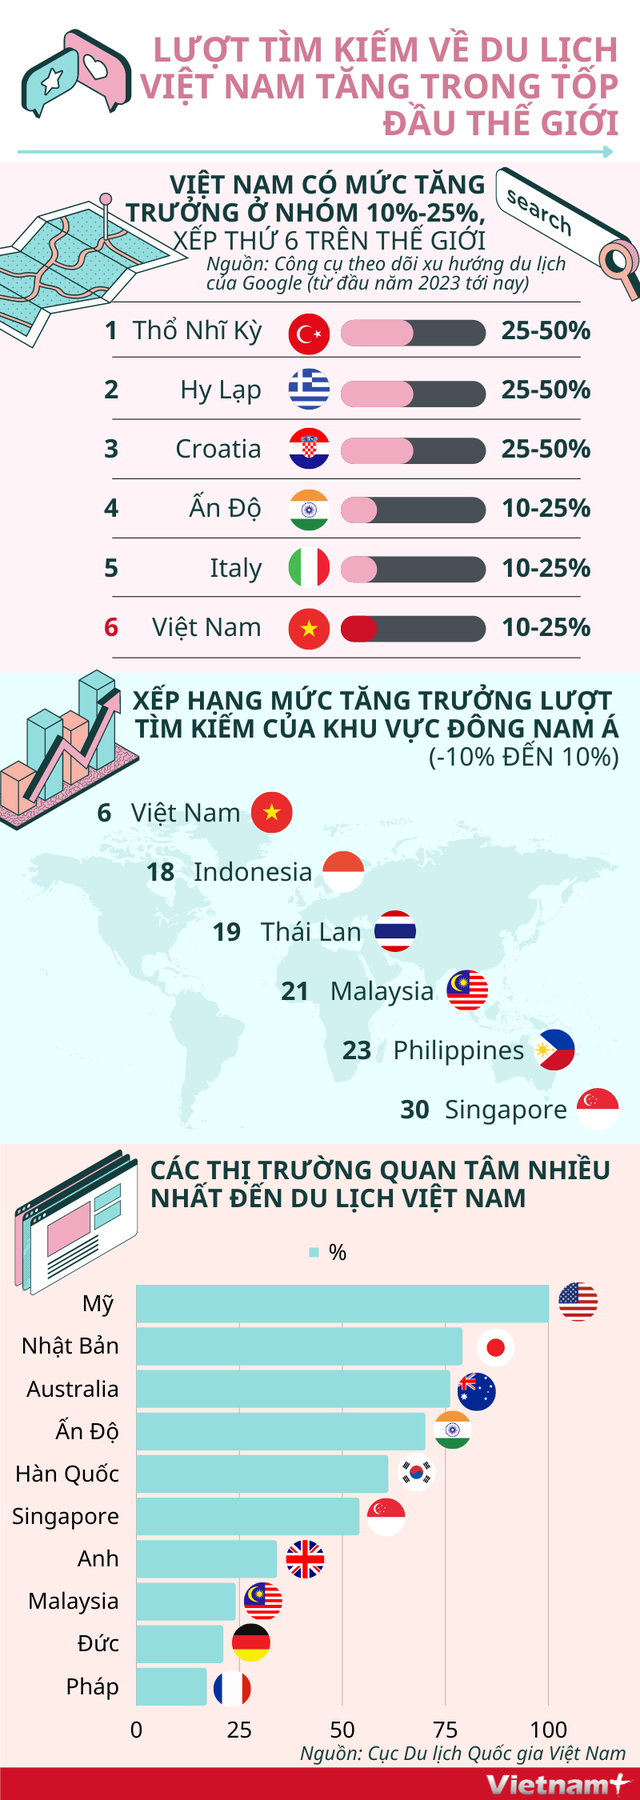 Việt Nam vươn lên top đầu thế giới về lượt tìm kiếm du lịch - Ảnh 1.